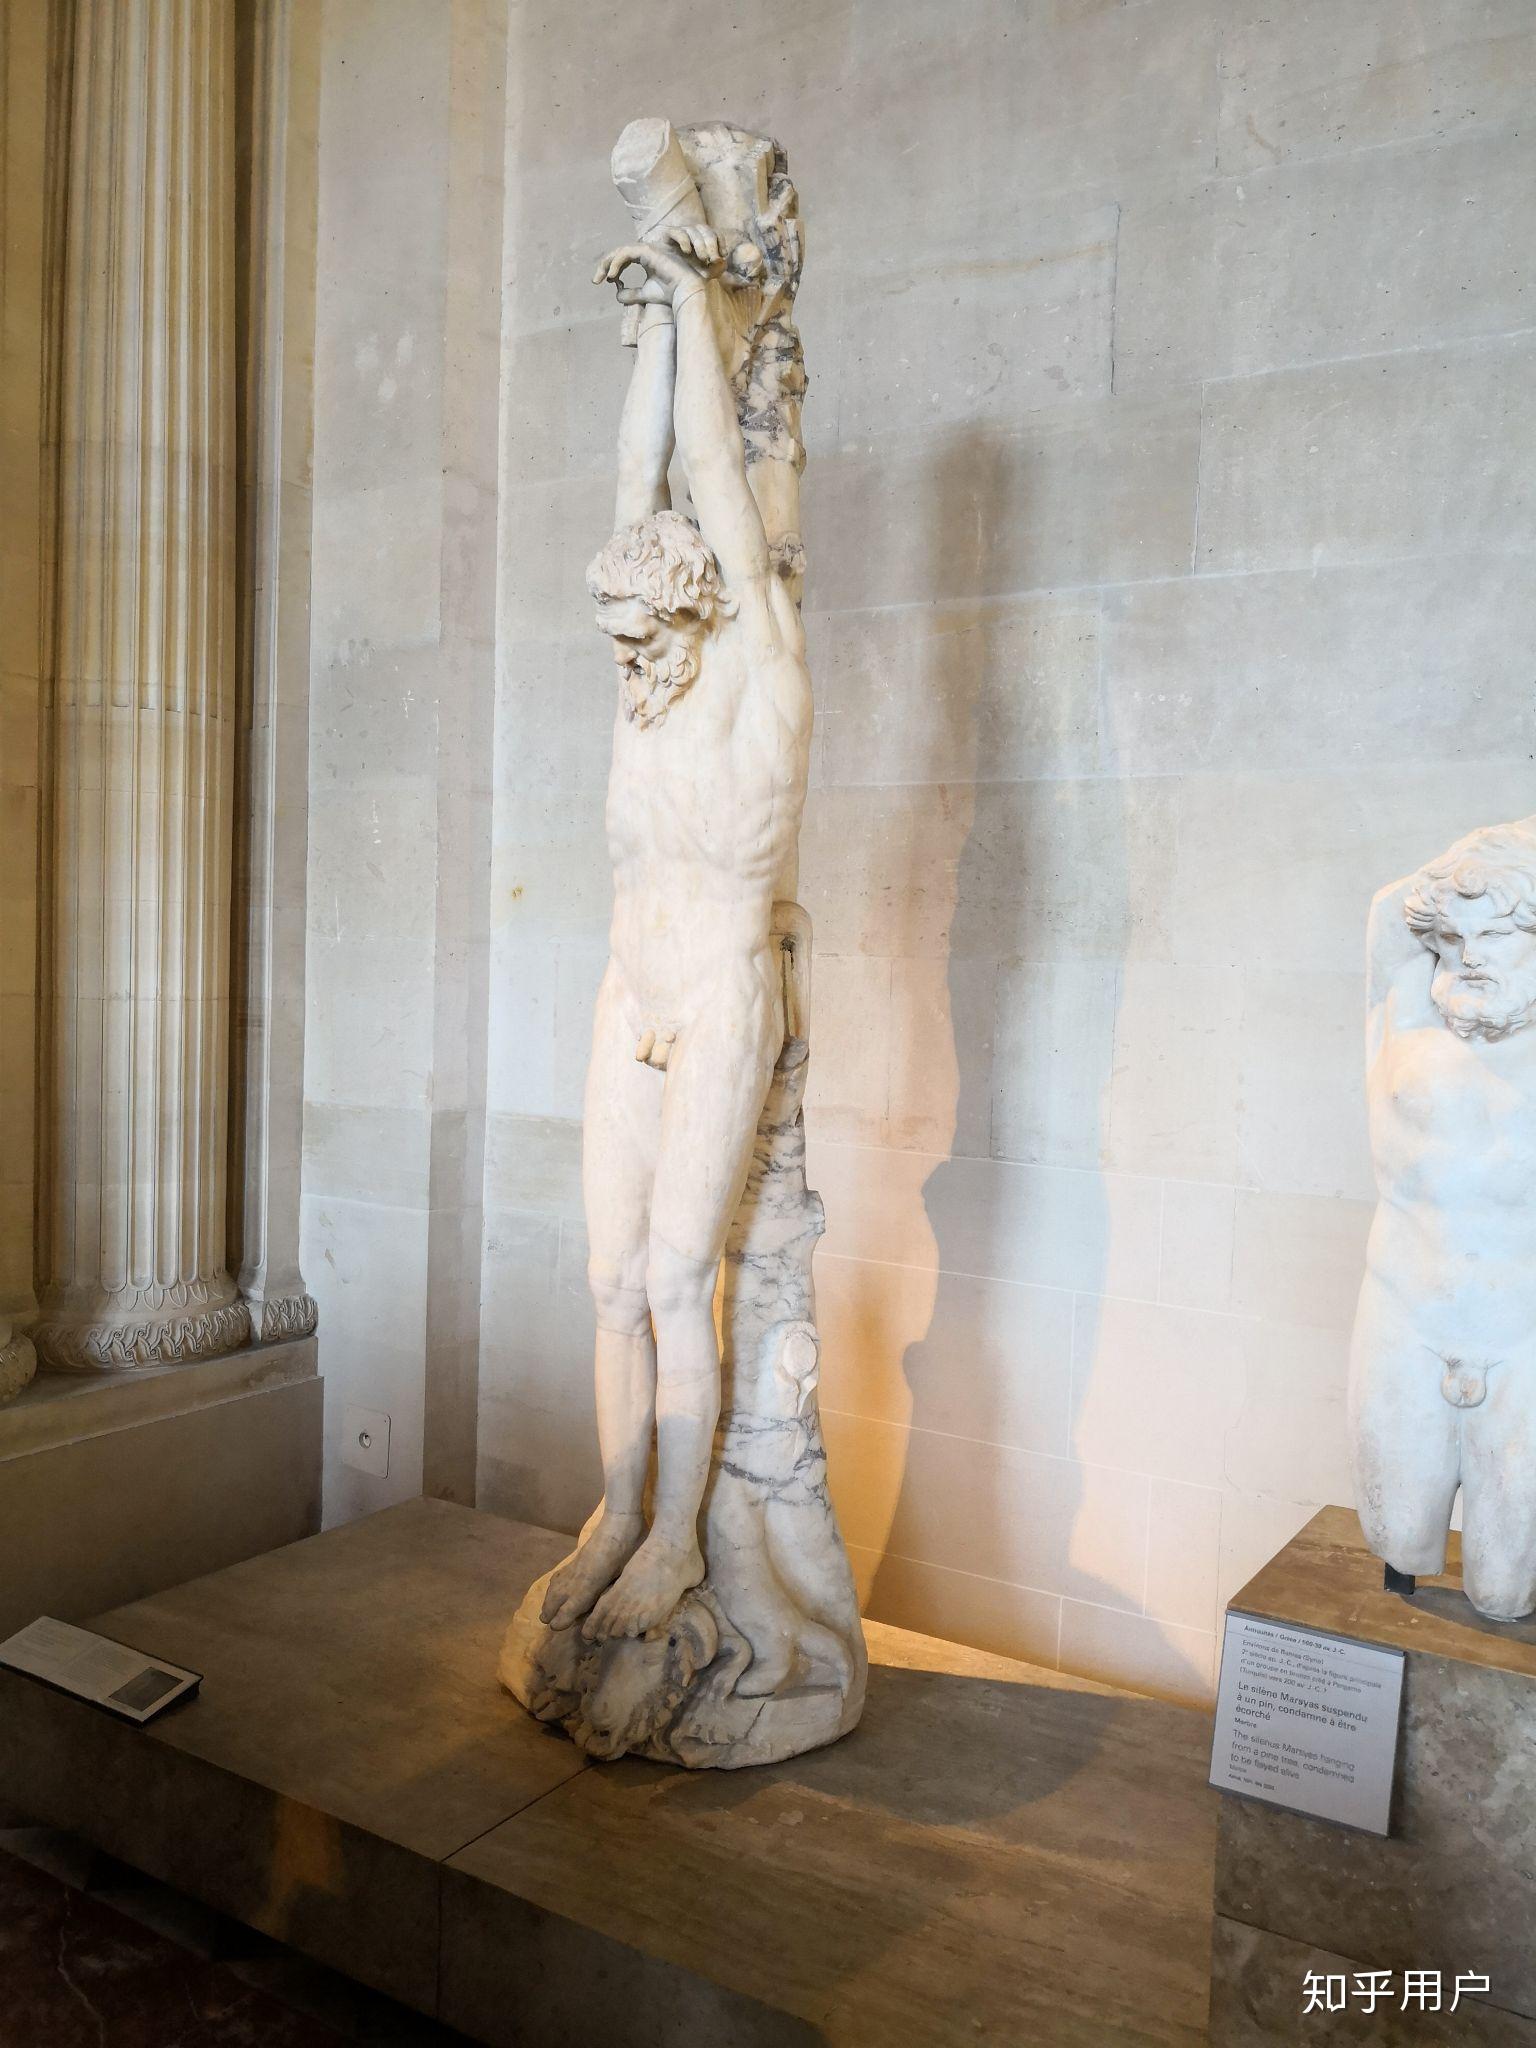 参观卢浮宫有哪些特别值得推荐的展品和线路